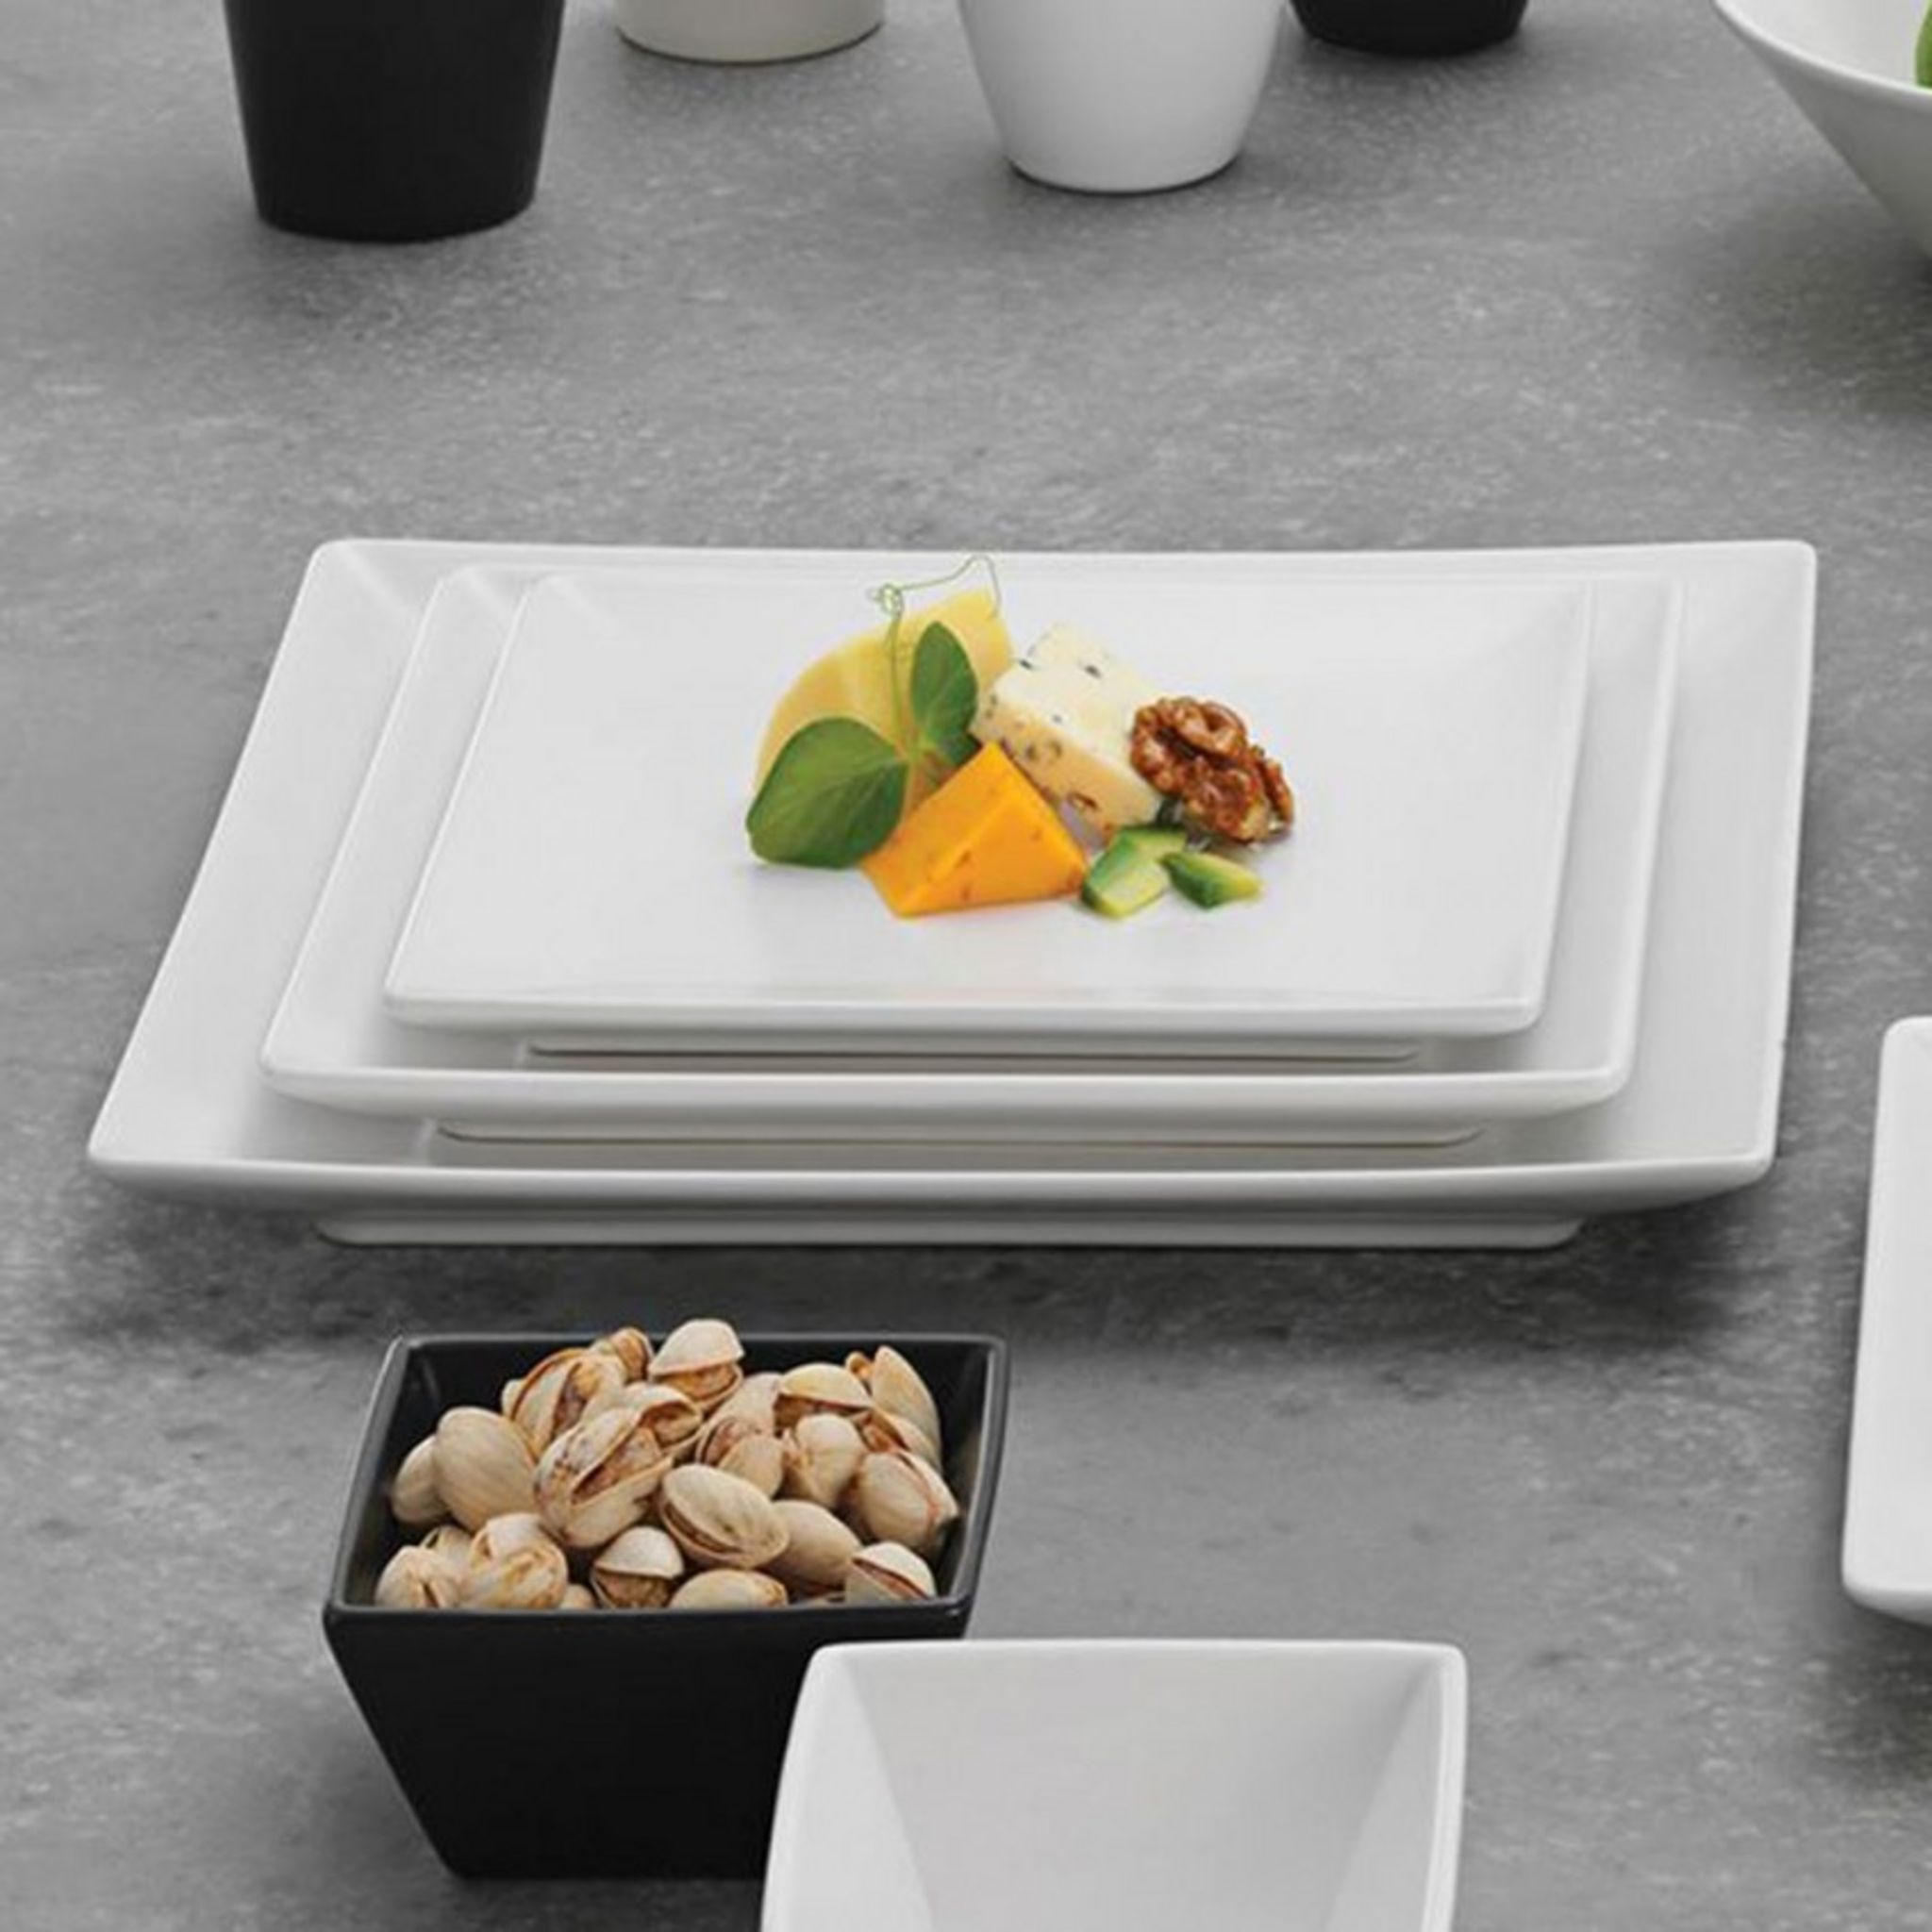 YODECO Assiette plate porcelaine blanche - D 26 cm - Siviglia pas cher 